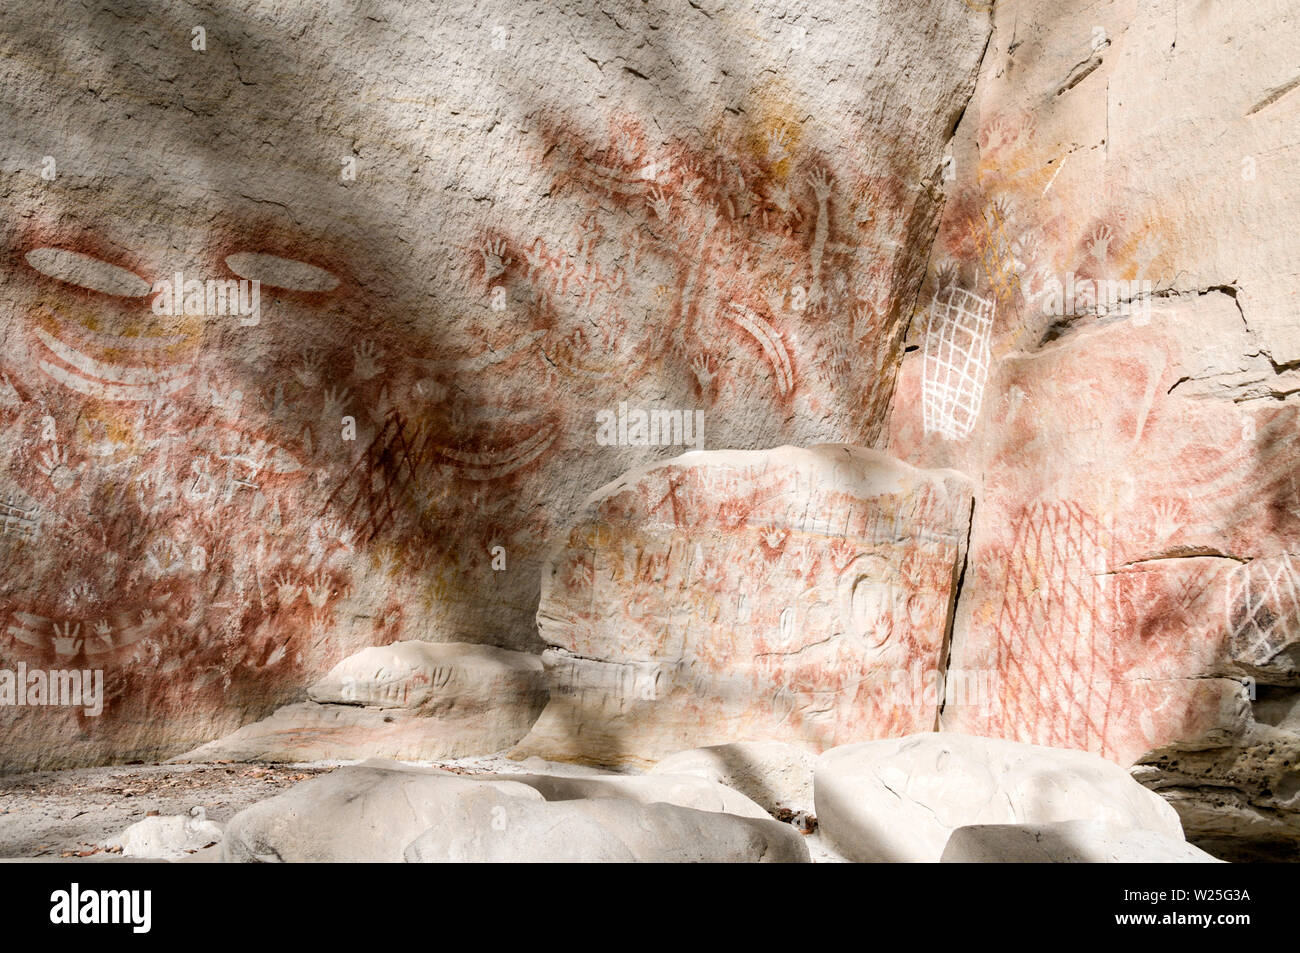 Un display di ben conservato rock Aborigena Arte stencil, credeva di essere 3.650 anni sulle bianche rocce di arenaria presso la "Galleria d'Arte" nella carna Foto Stock